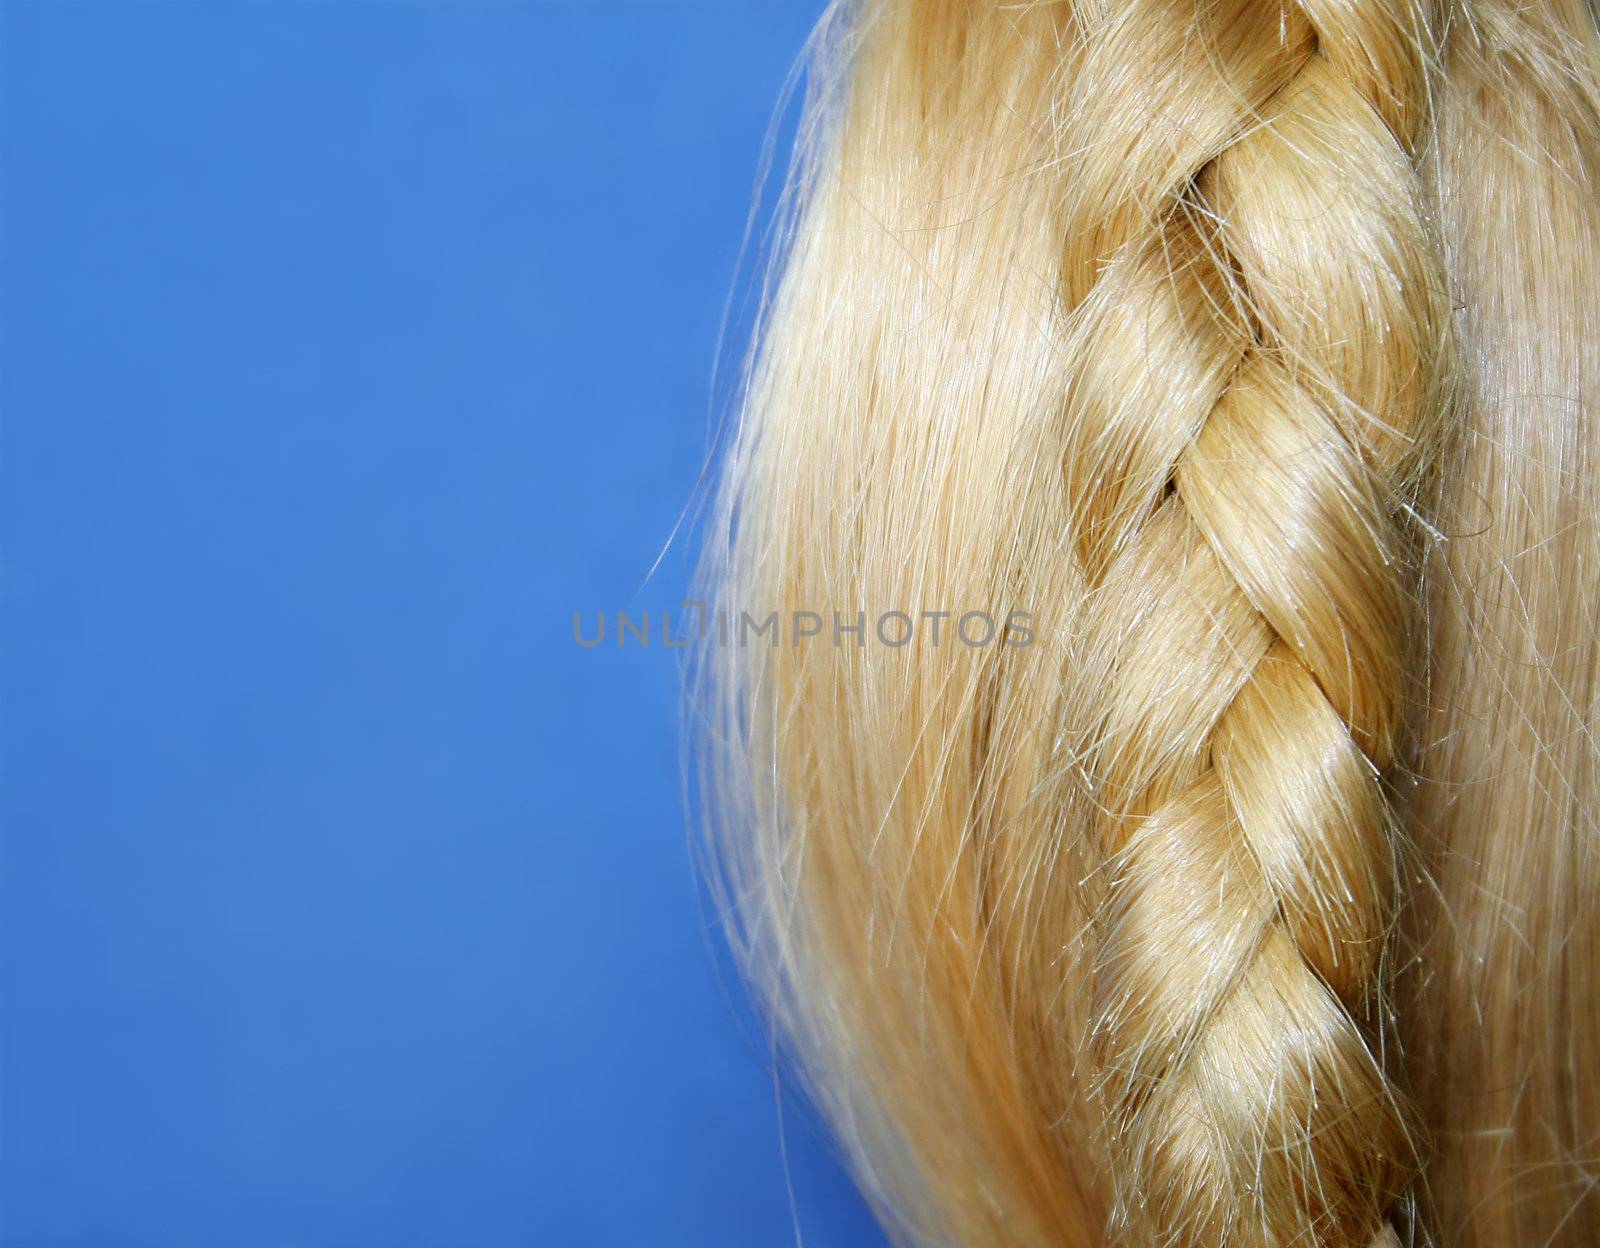 Shiny blond hair and plait against blue. Focus on plait. Copyspace.